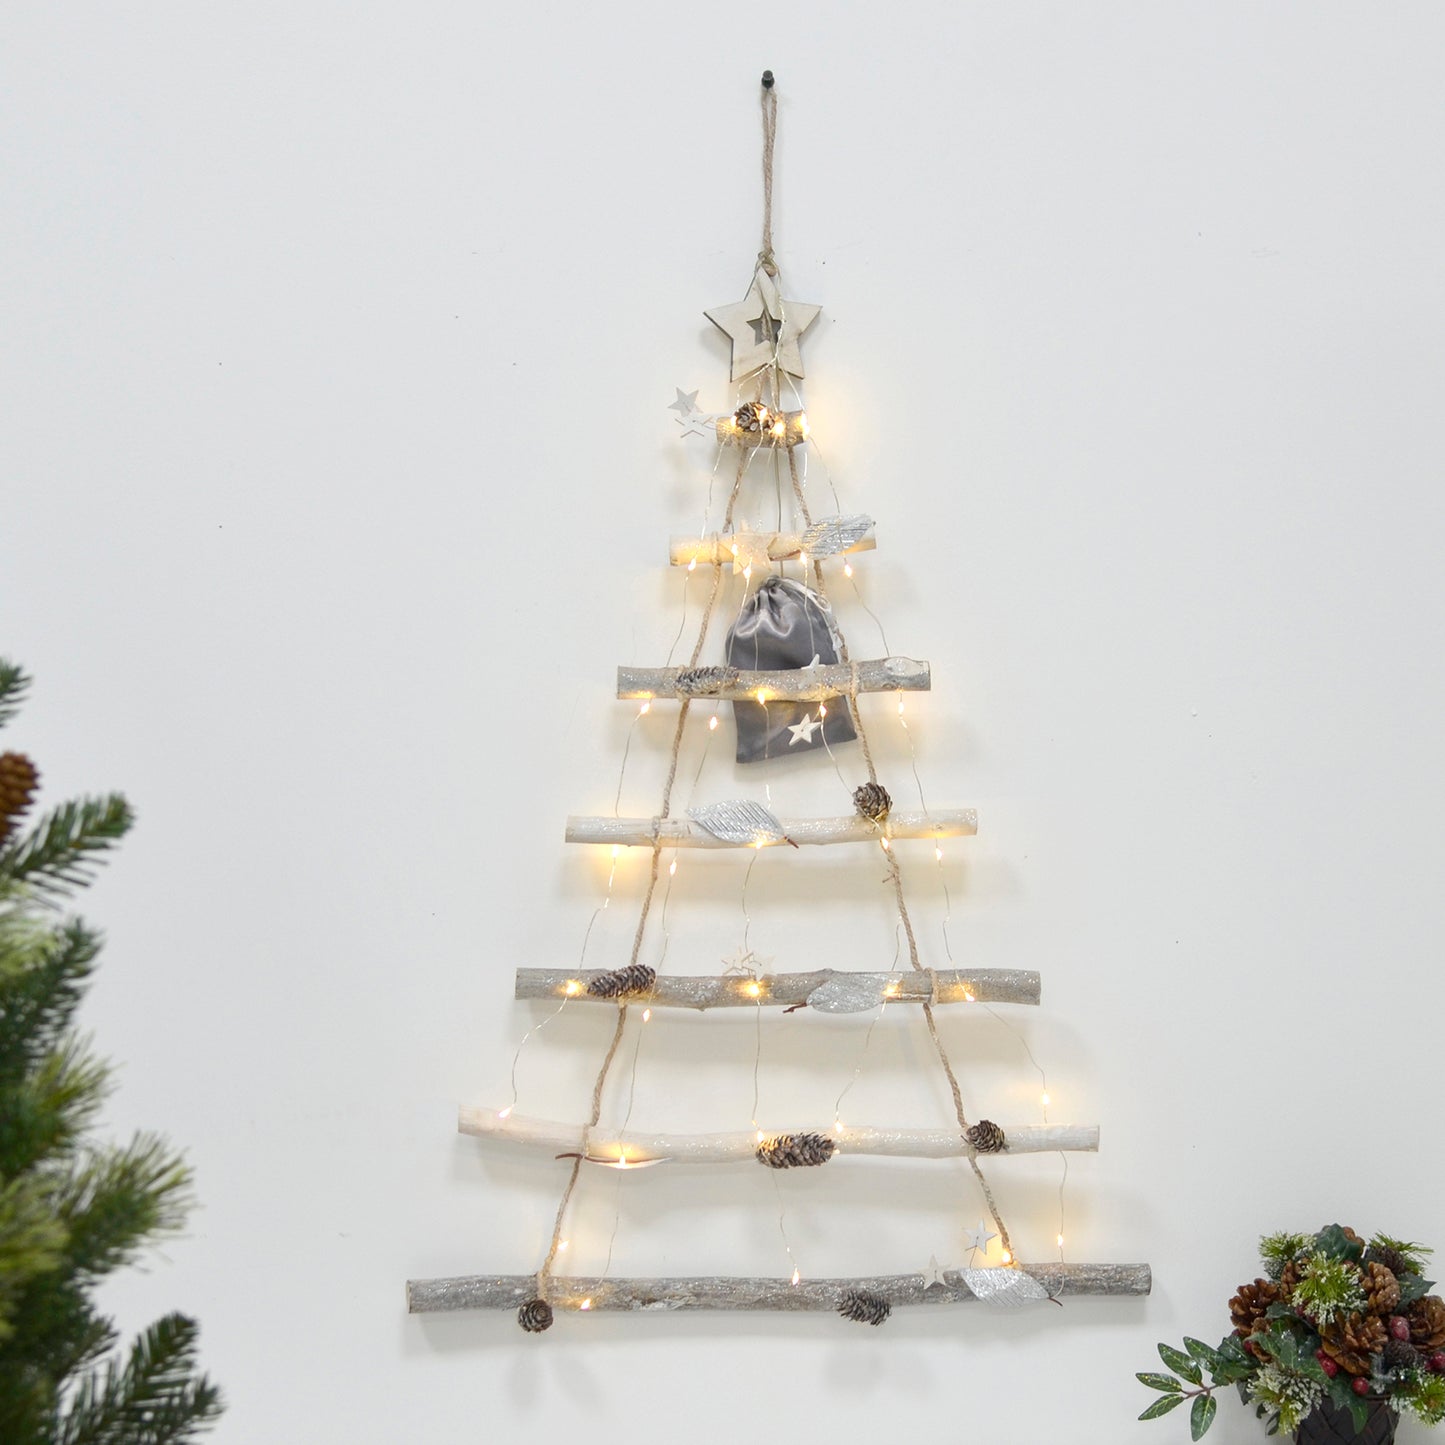 Mr Crimbo Light Up Silver Twigs Ladder Decoration 70cm - MrCrimbo.co.uk -XS6688 - -